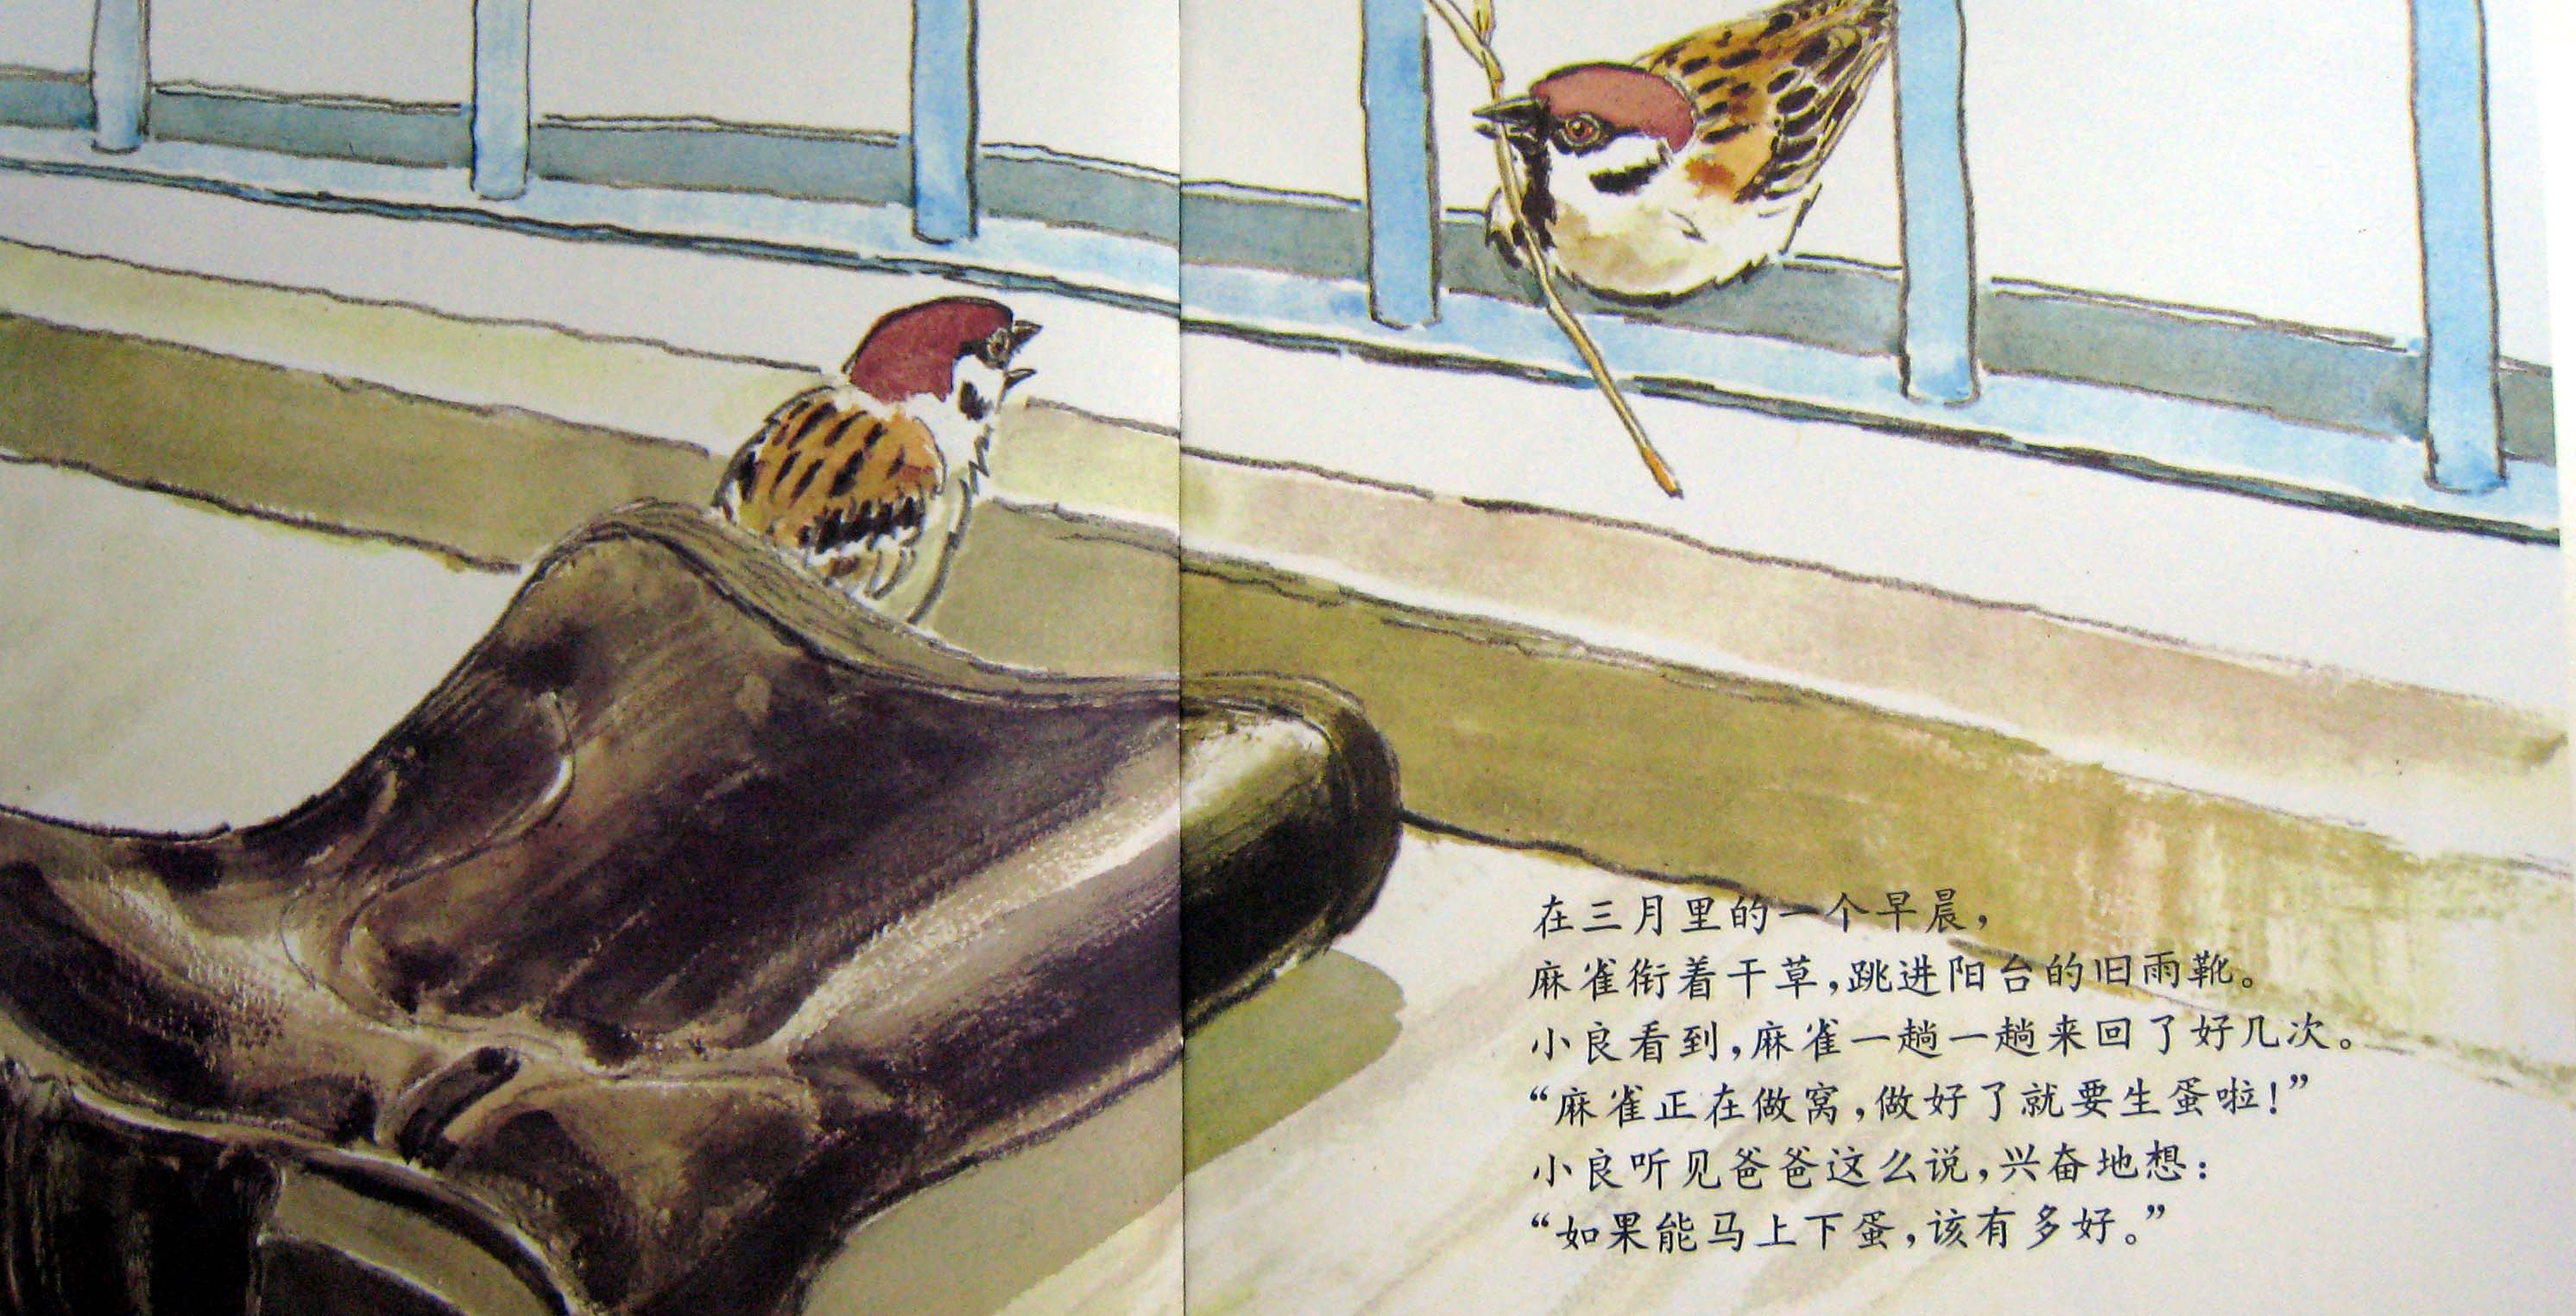 雨靴里的麻雀 (06),绘本,绘本故事,绘本阅读,故事书,童书,图画书,课外阅读